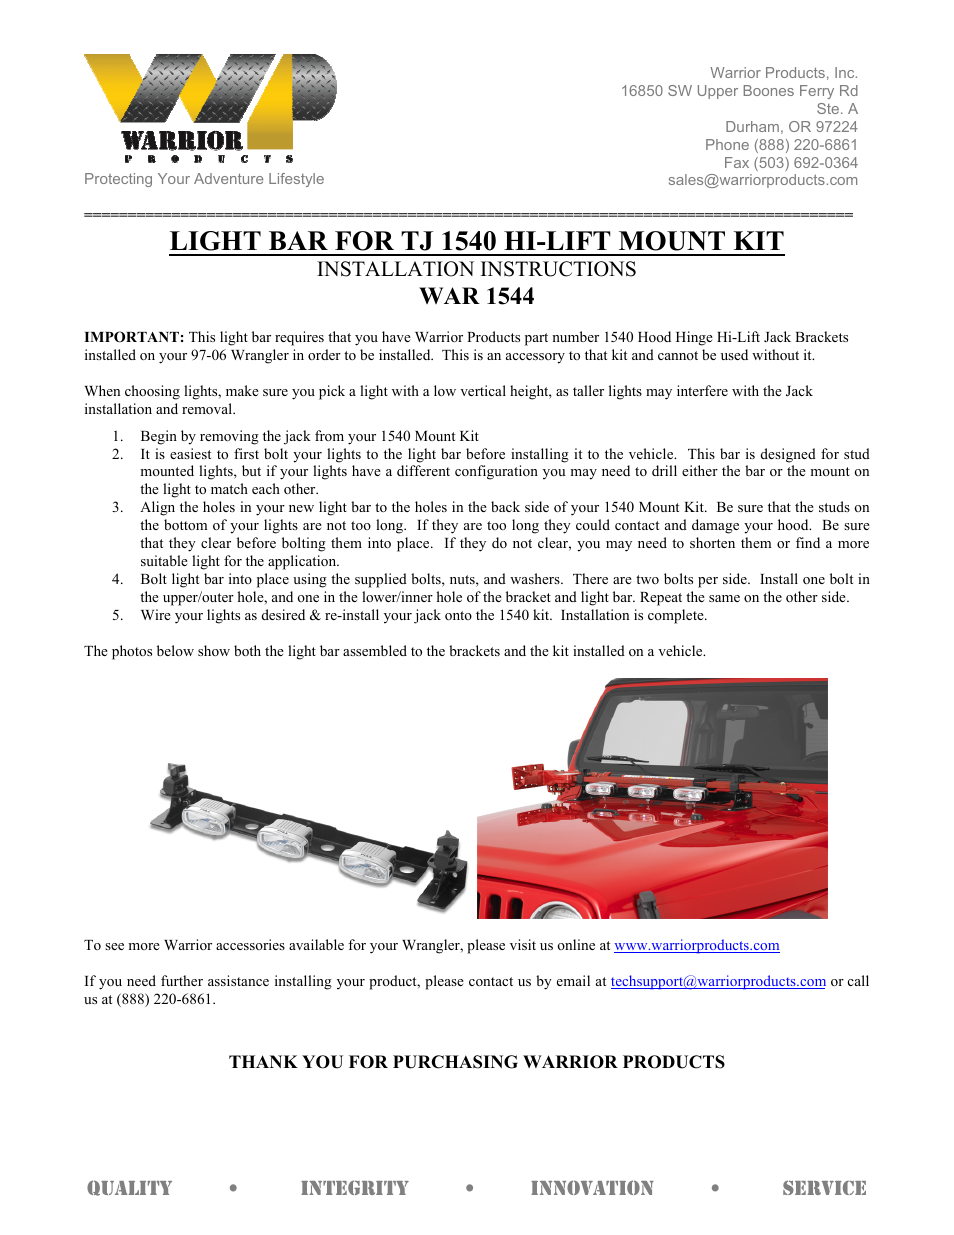 1544 LIGHT BAR FOR TJ 1540 HI-LIFT MOUNT KIT (1997 – 2006 Jeep TJ Wrangler)